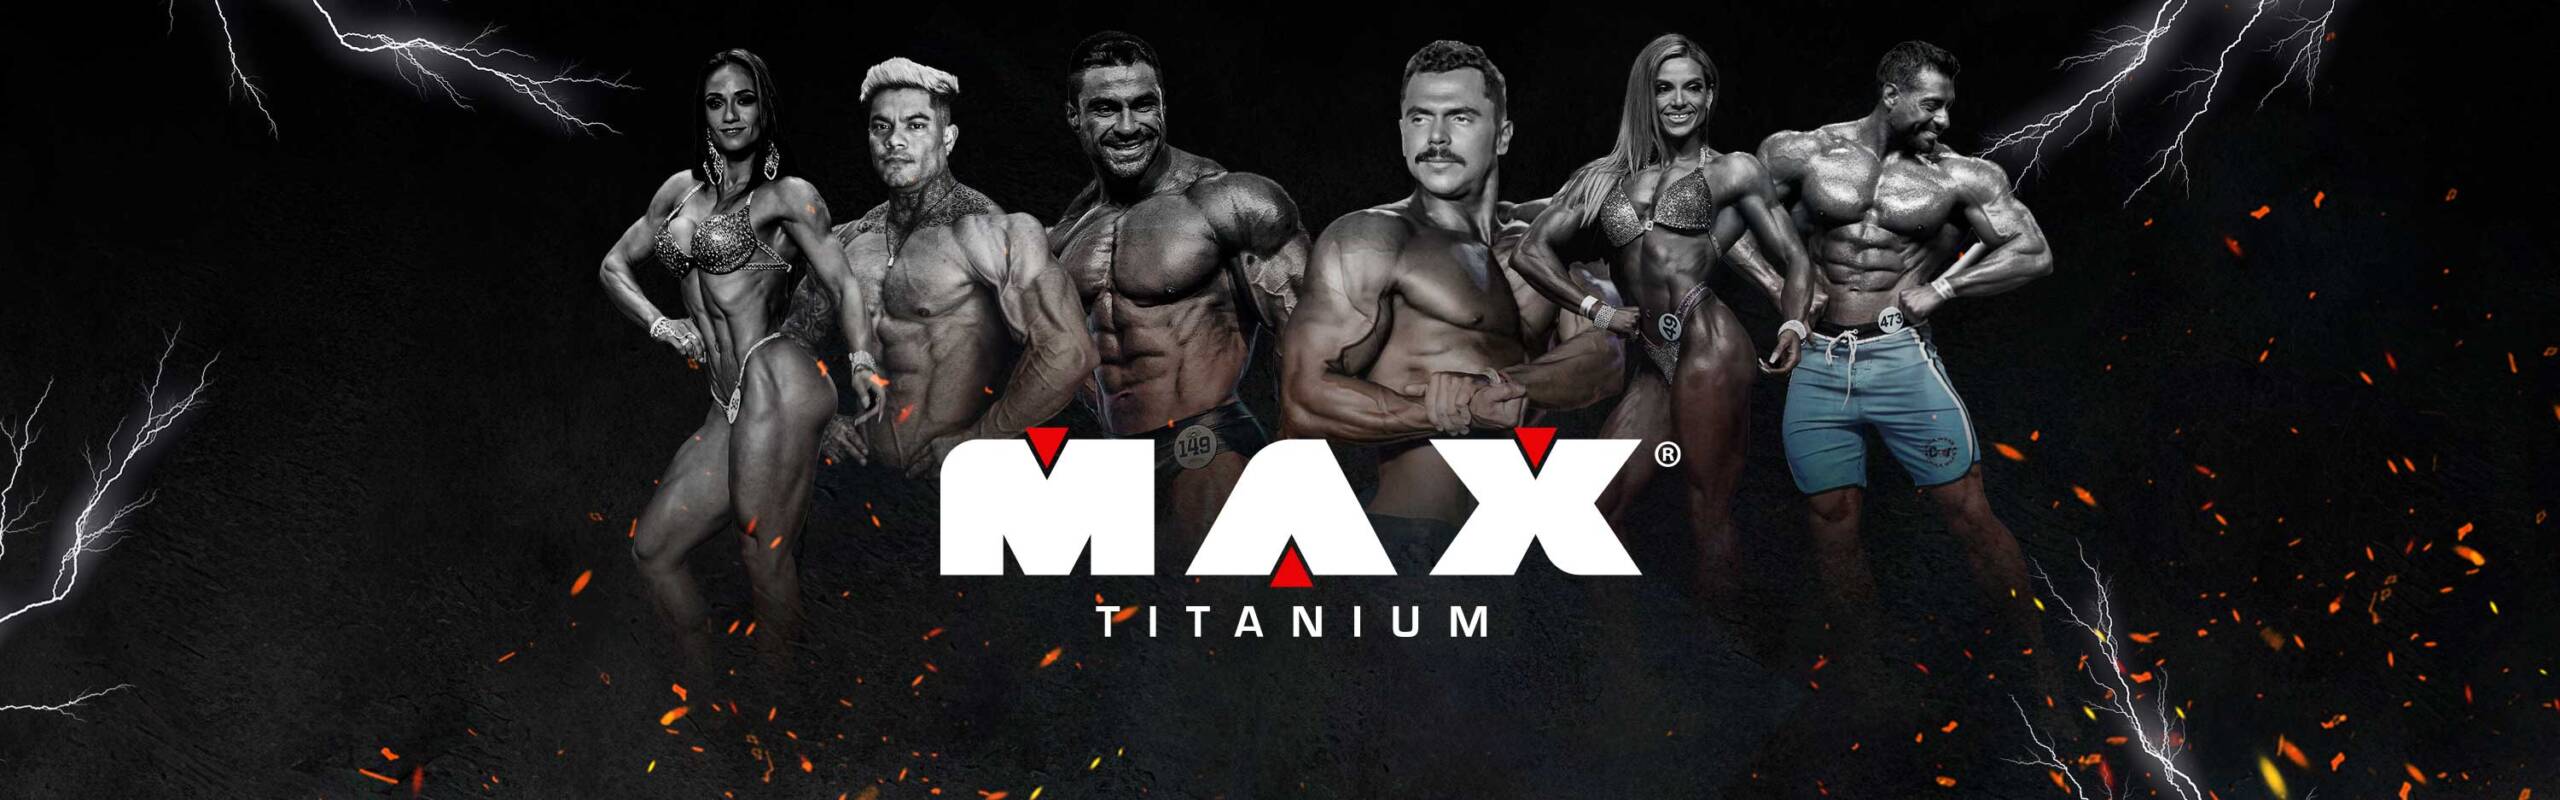 Max Titanium 